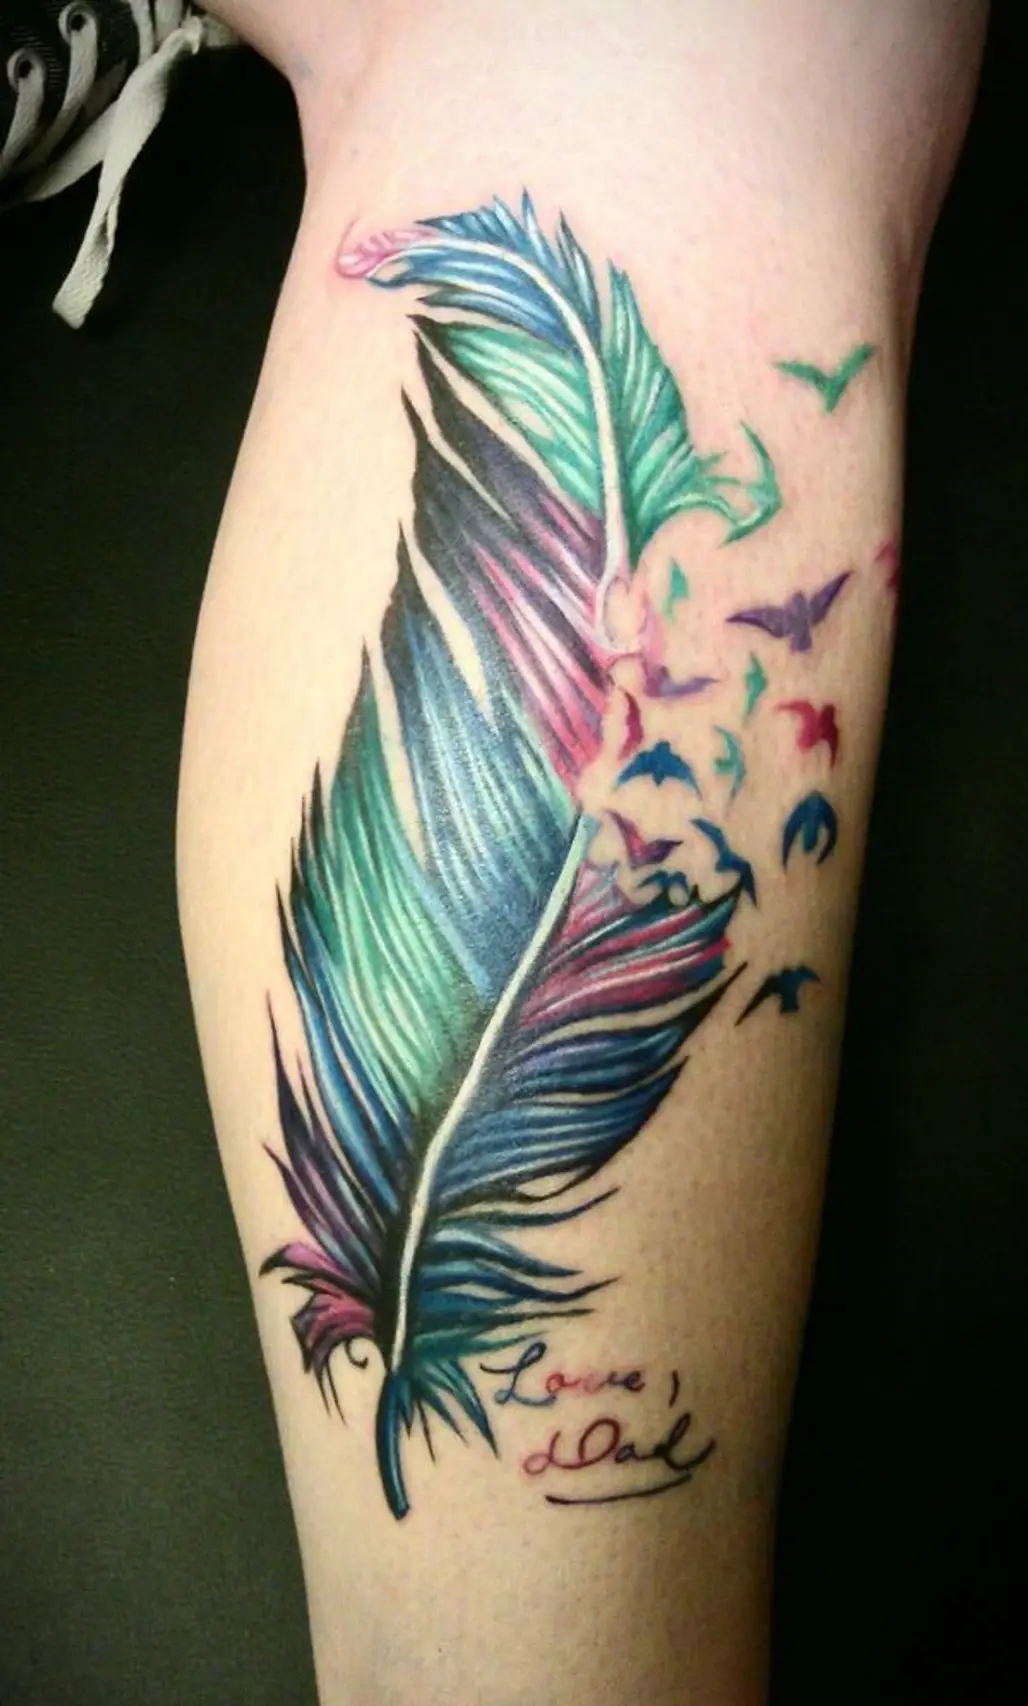 tattoo,arm,leg,human body,tattoo artist,